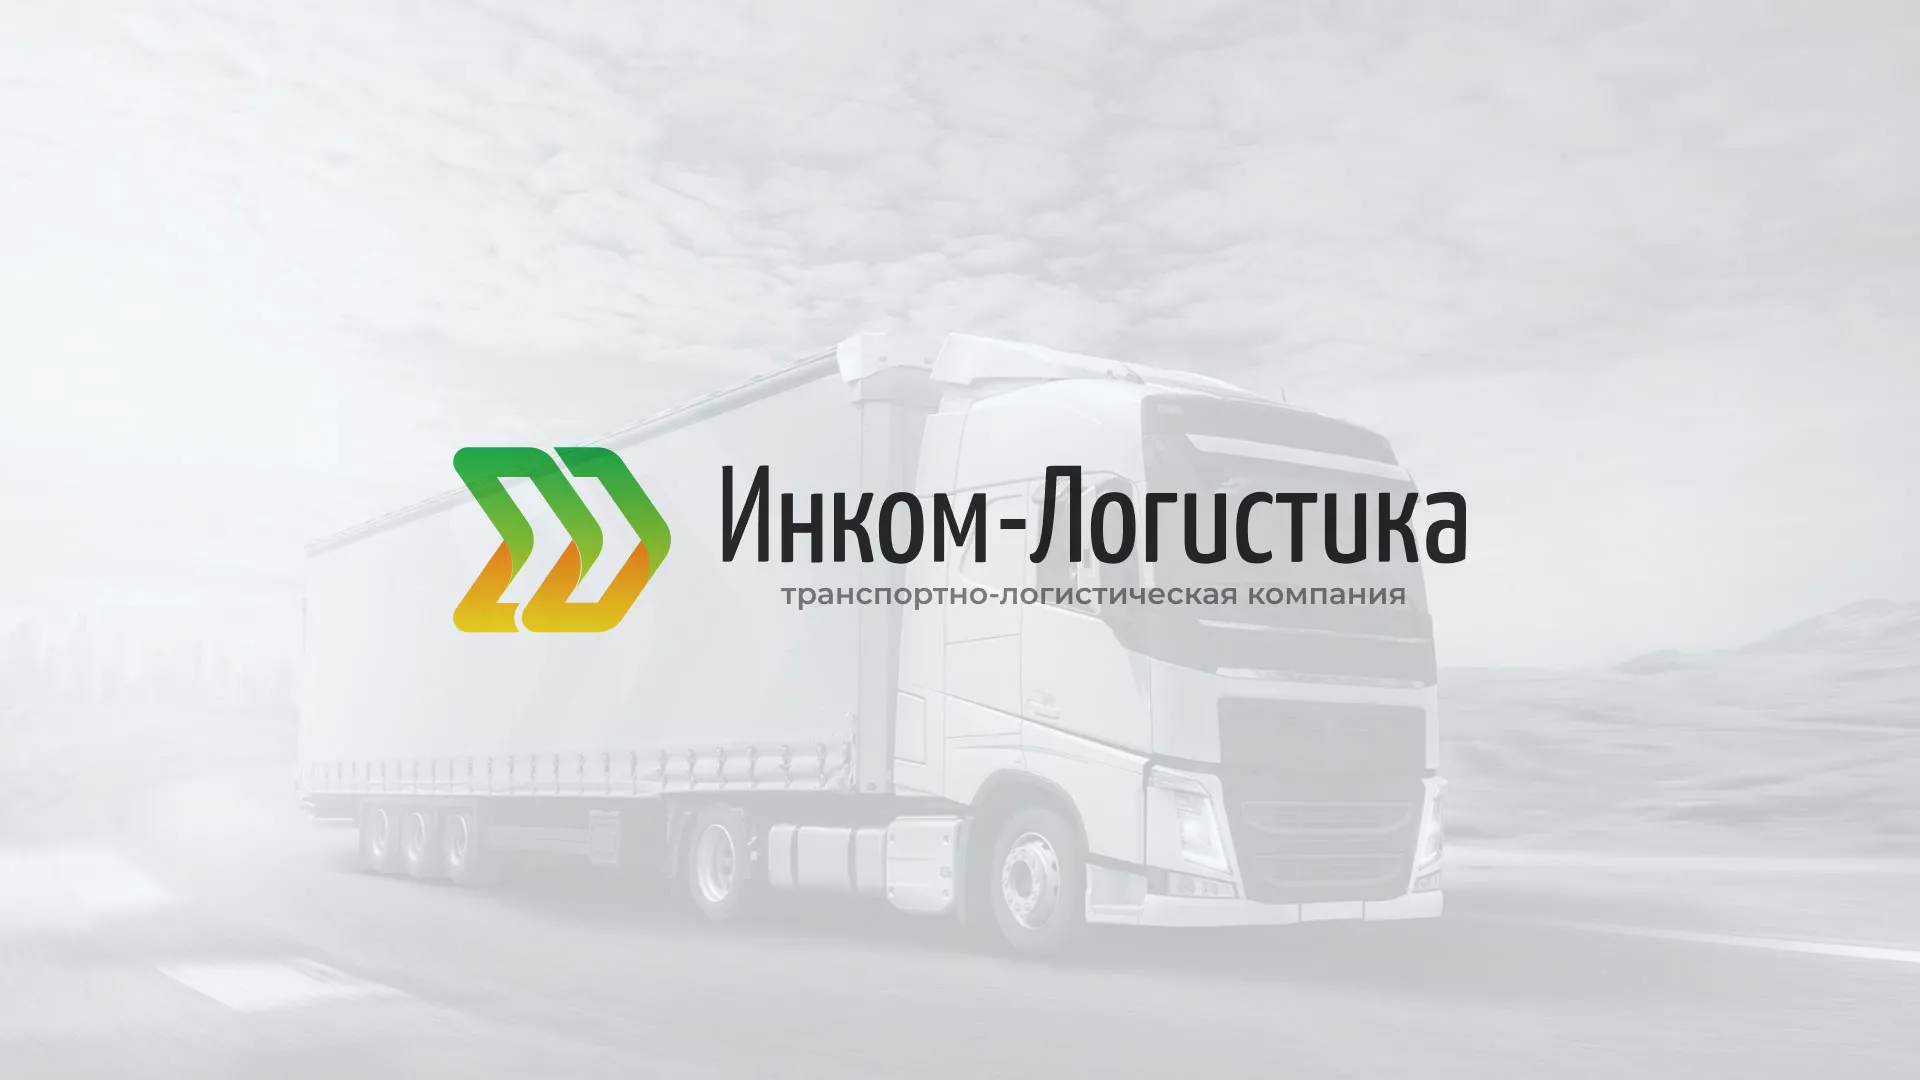 Разработка логотипа и сайта компании «Инком-Логистика» в Грязях